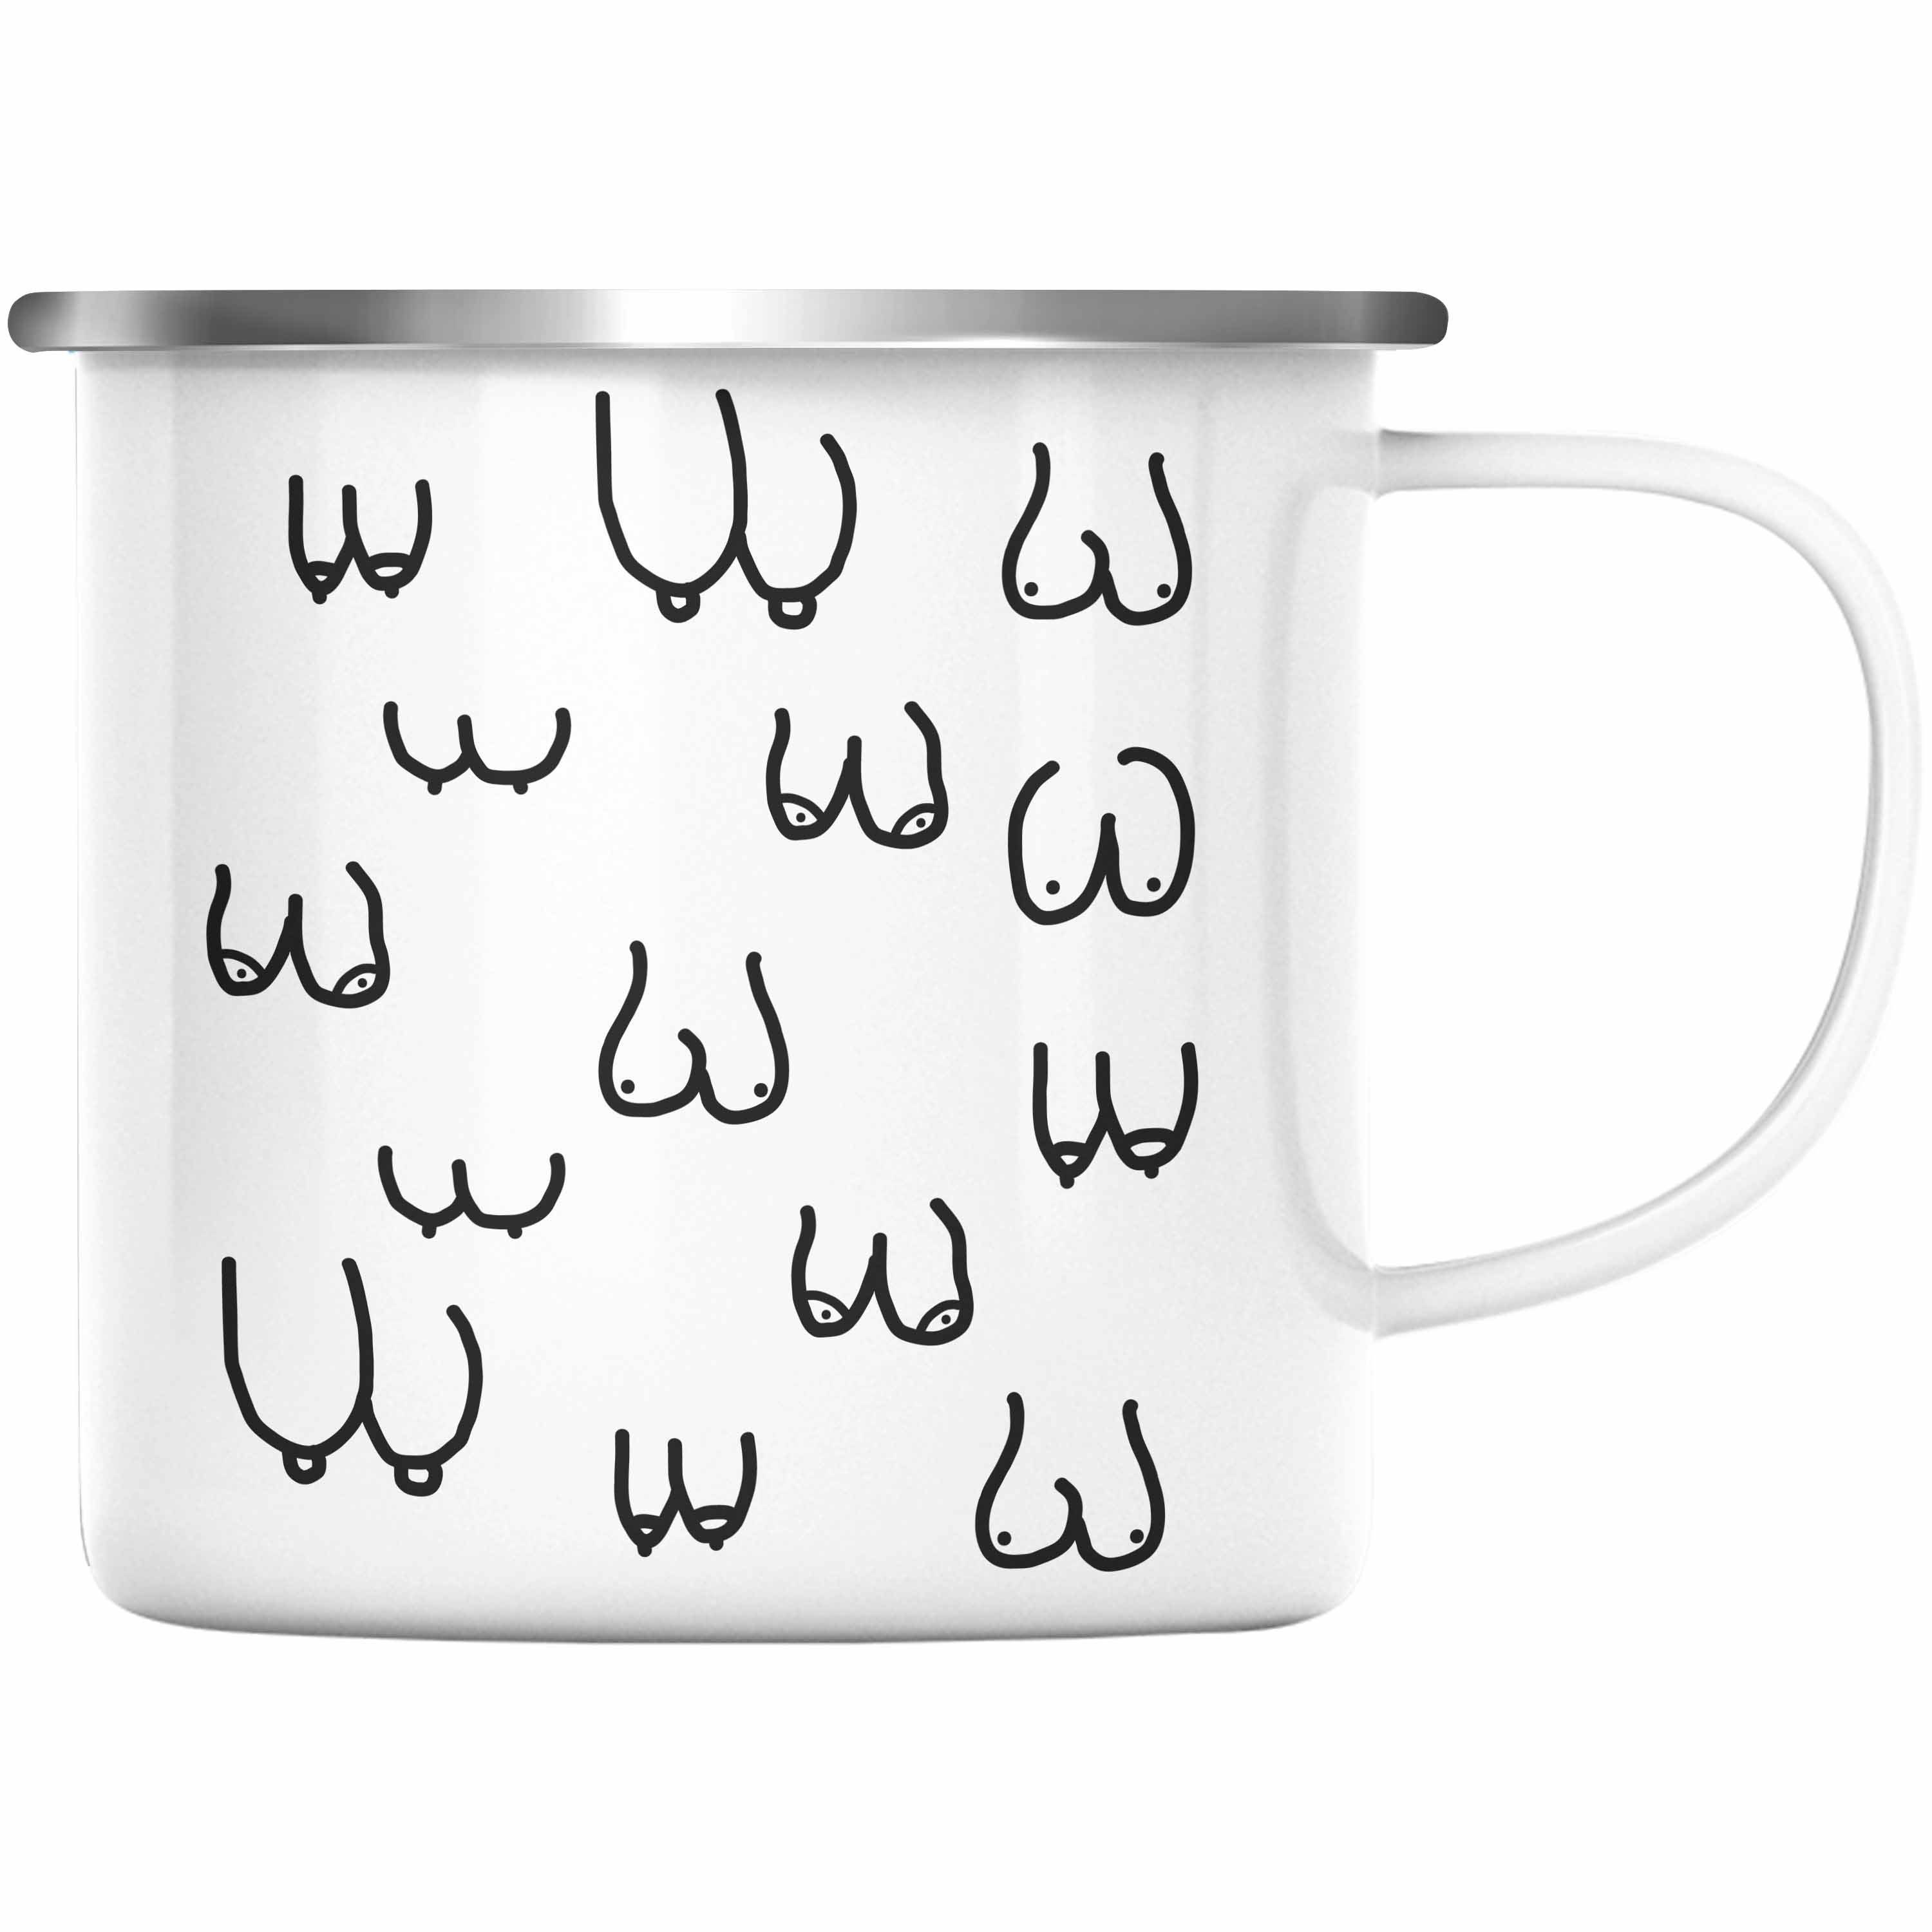 Trendation Thermotasse Trendation - Lustige Emaille Tasse mit Busen / Brüsten für Erwachsene als 18+ Geschenkidee Lustige Feminismus KaffeeEmaille Tasse Silber